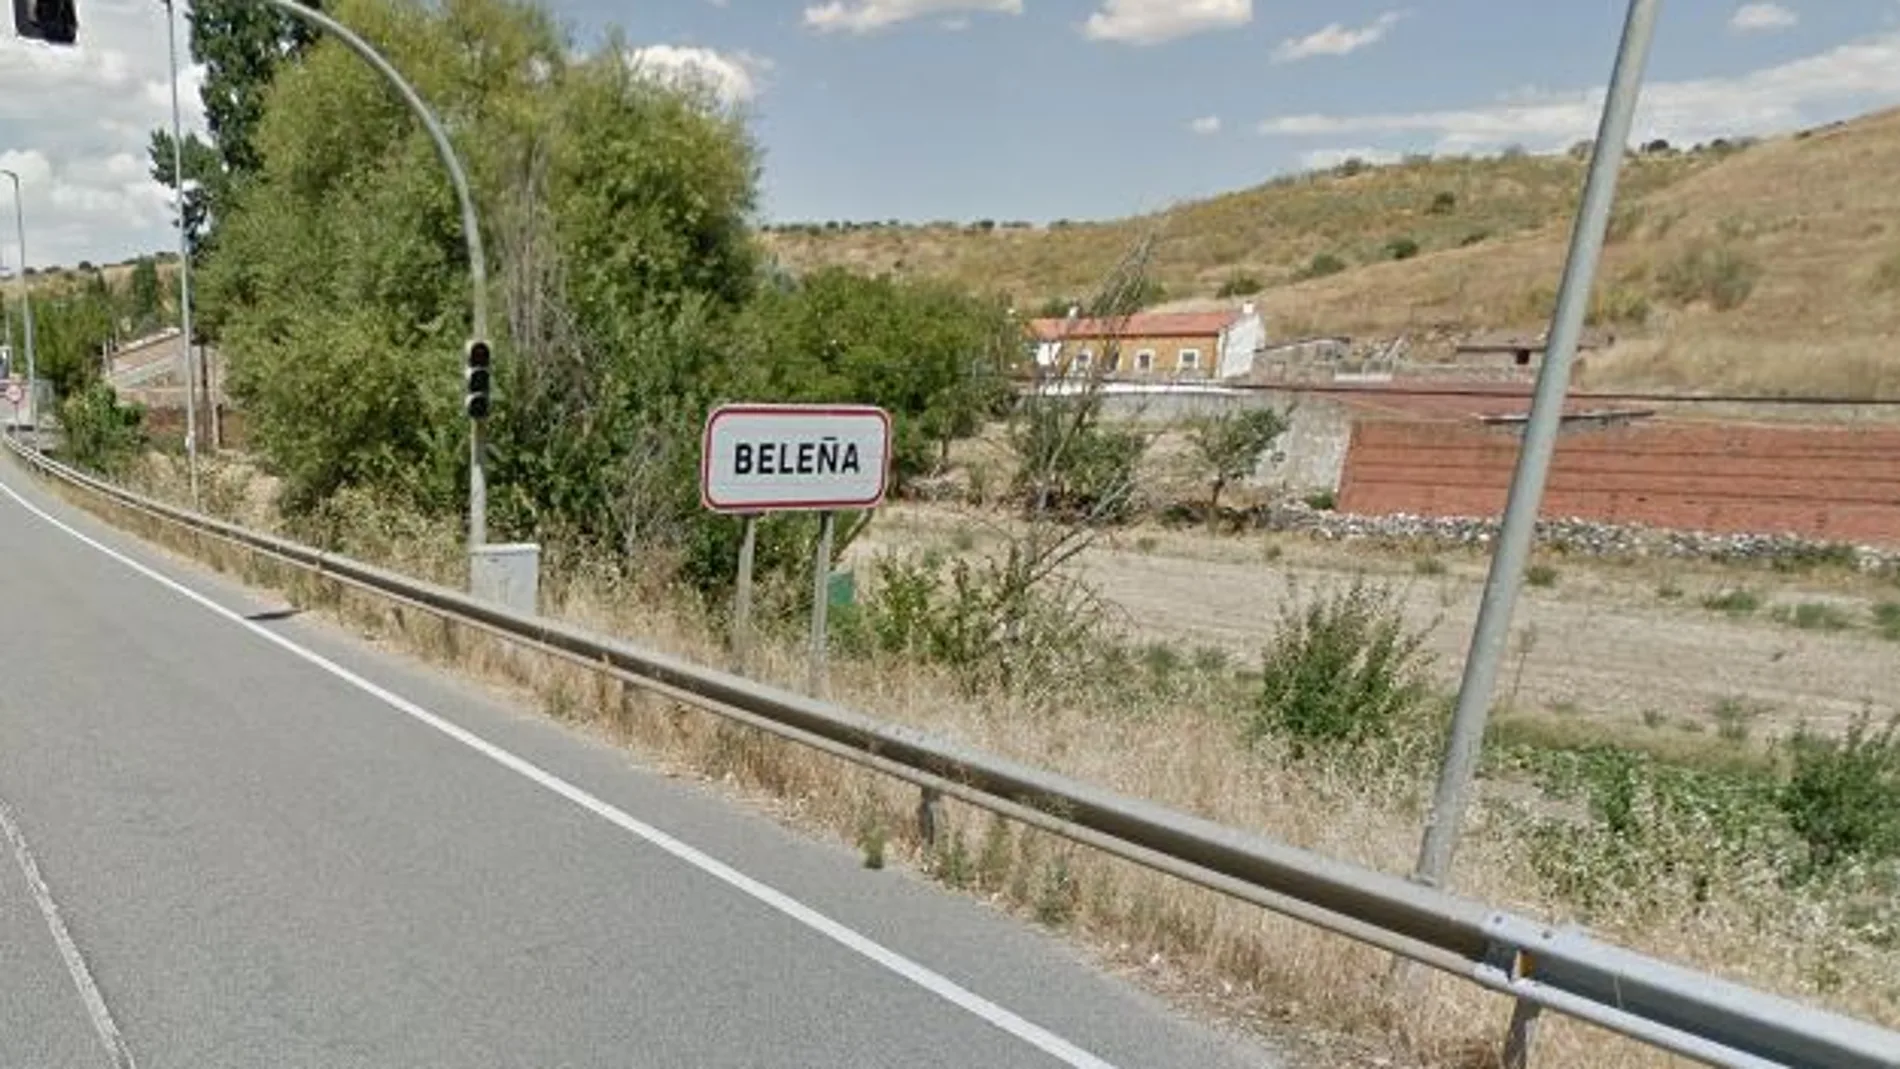 Los hechos se produjeron en la A-66 a su paso por el término municipal de Beleña (Salamanca)